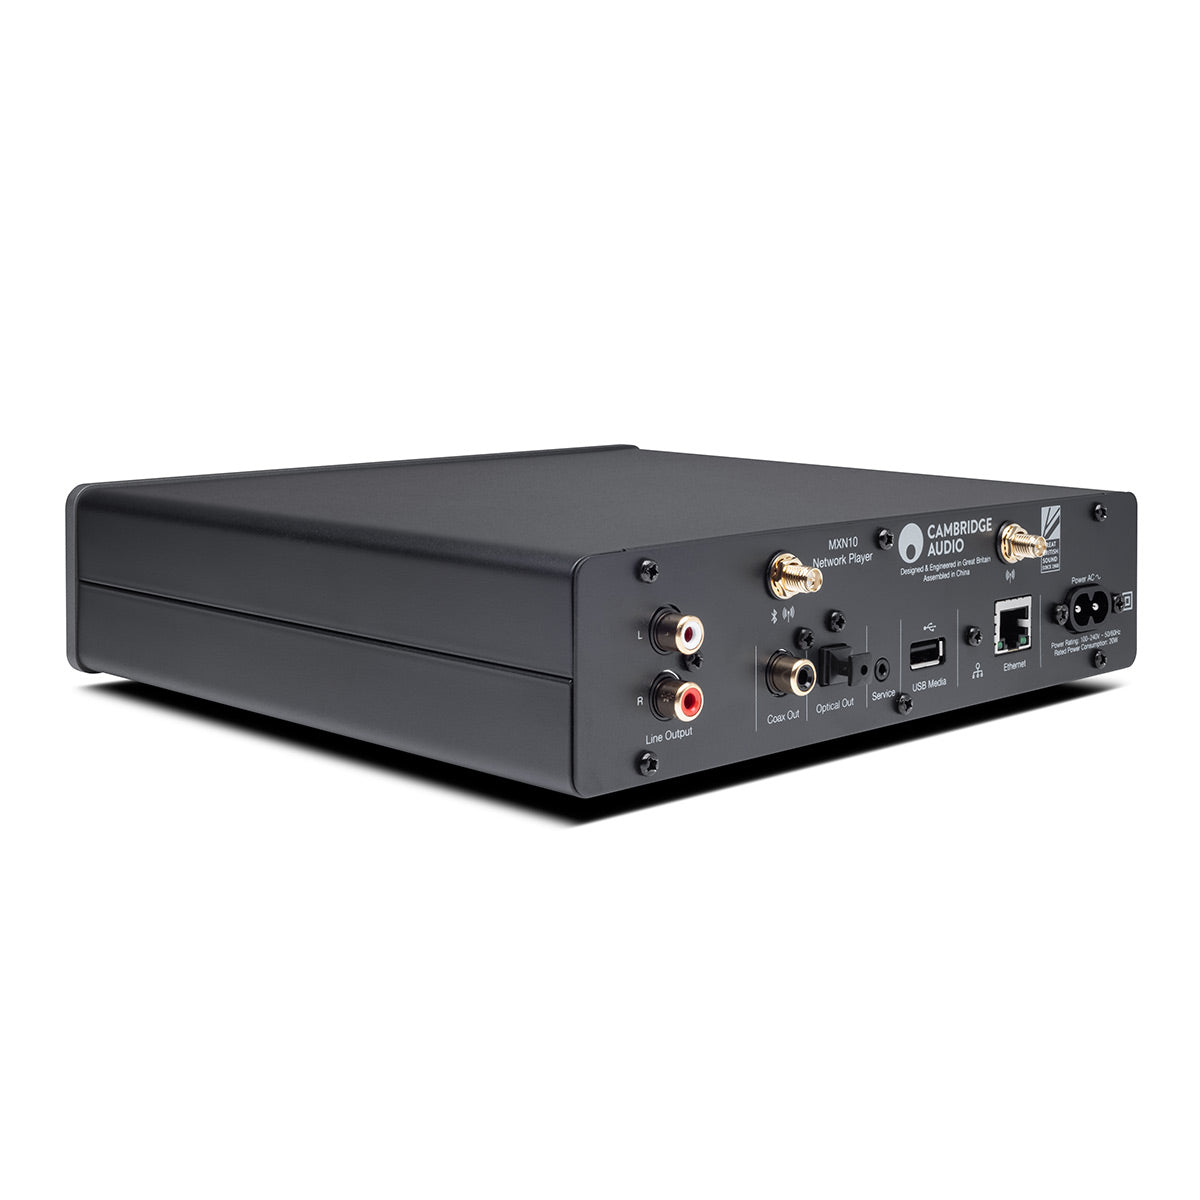 Review Cambridge Audio MXN10 streaming bridge - The Cambridge MXN10 sound -  Alpha Audio